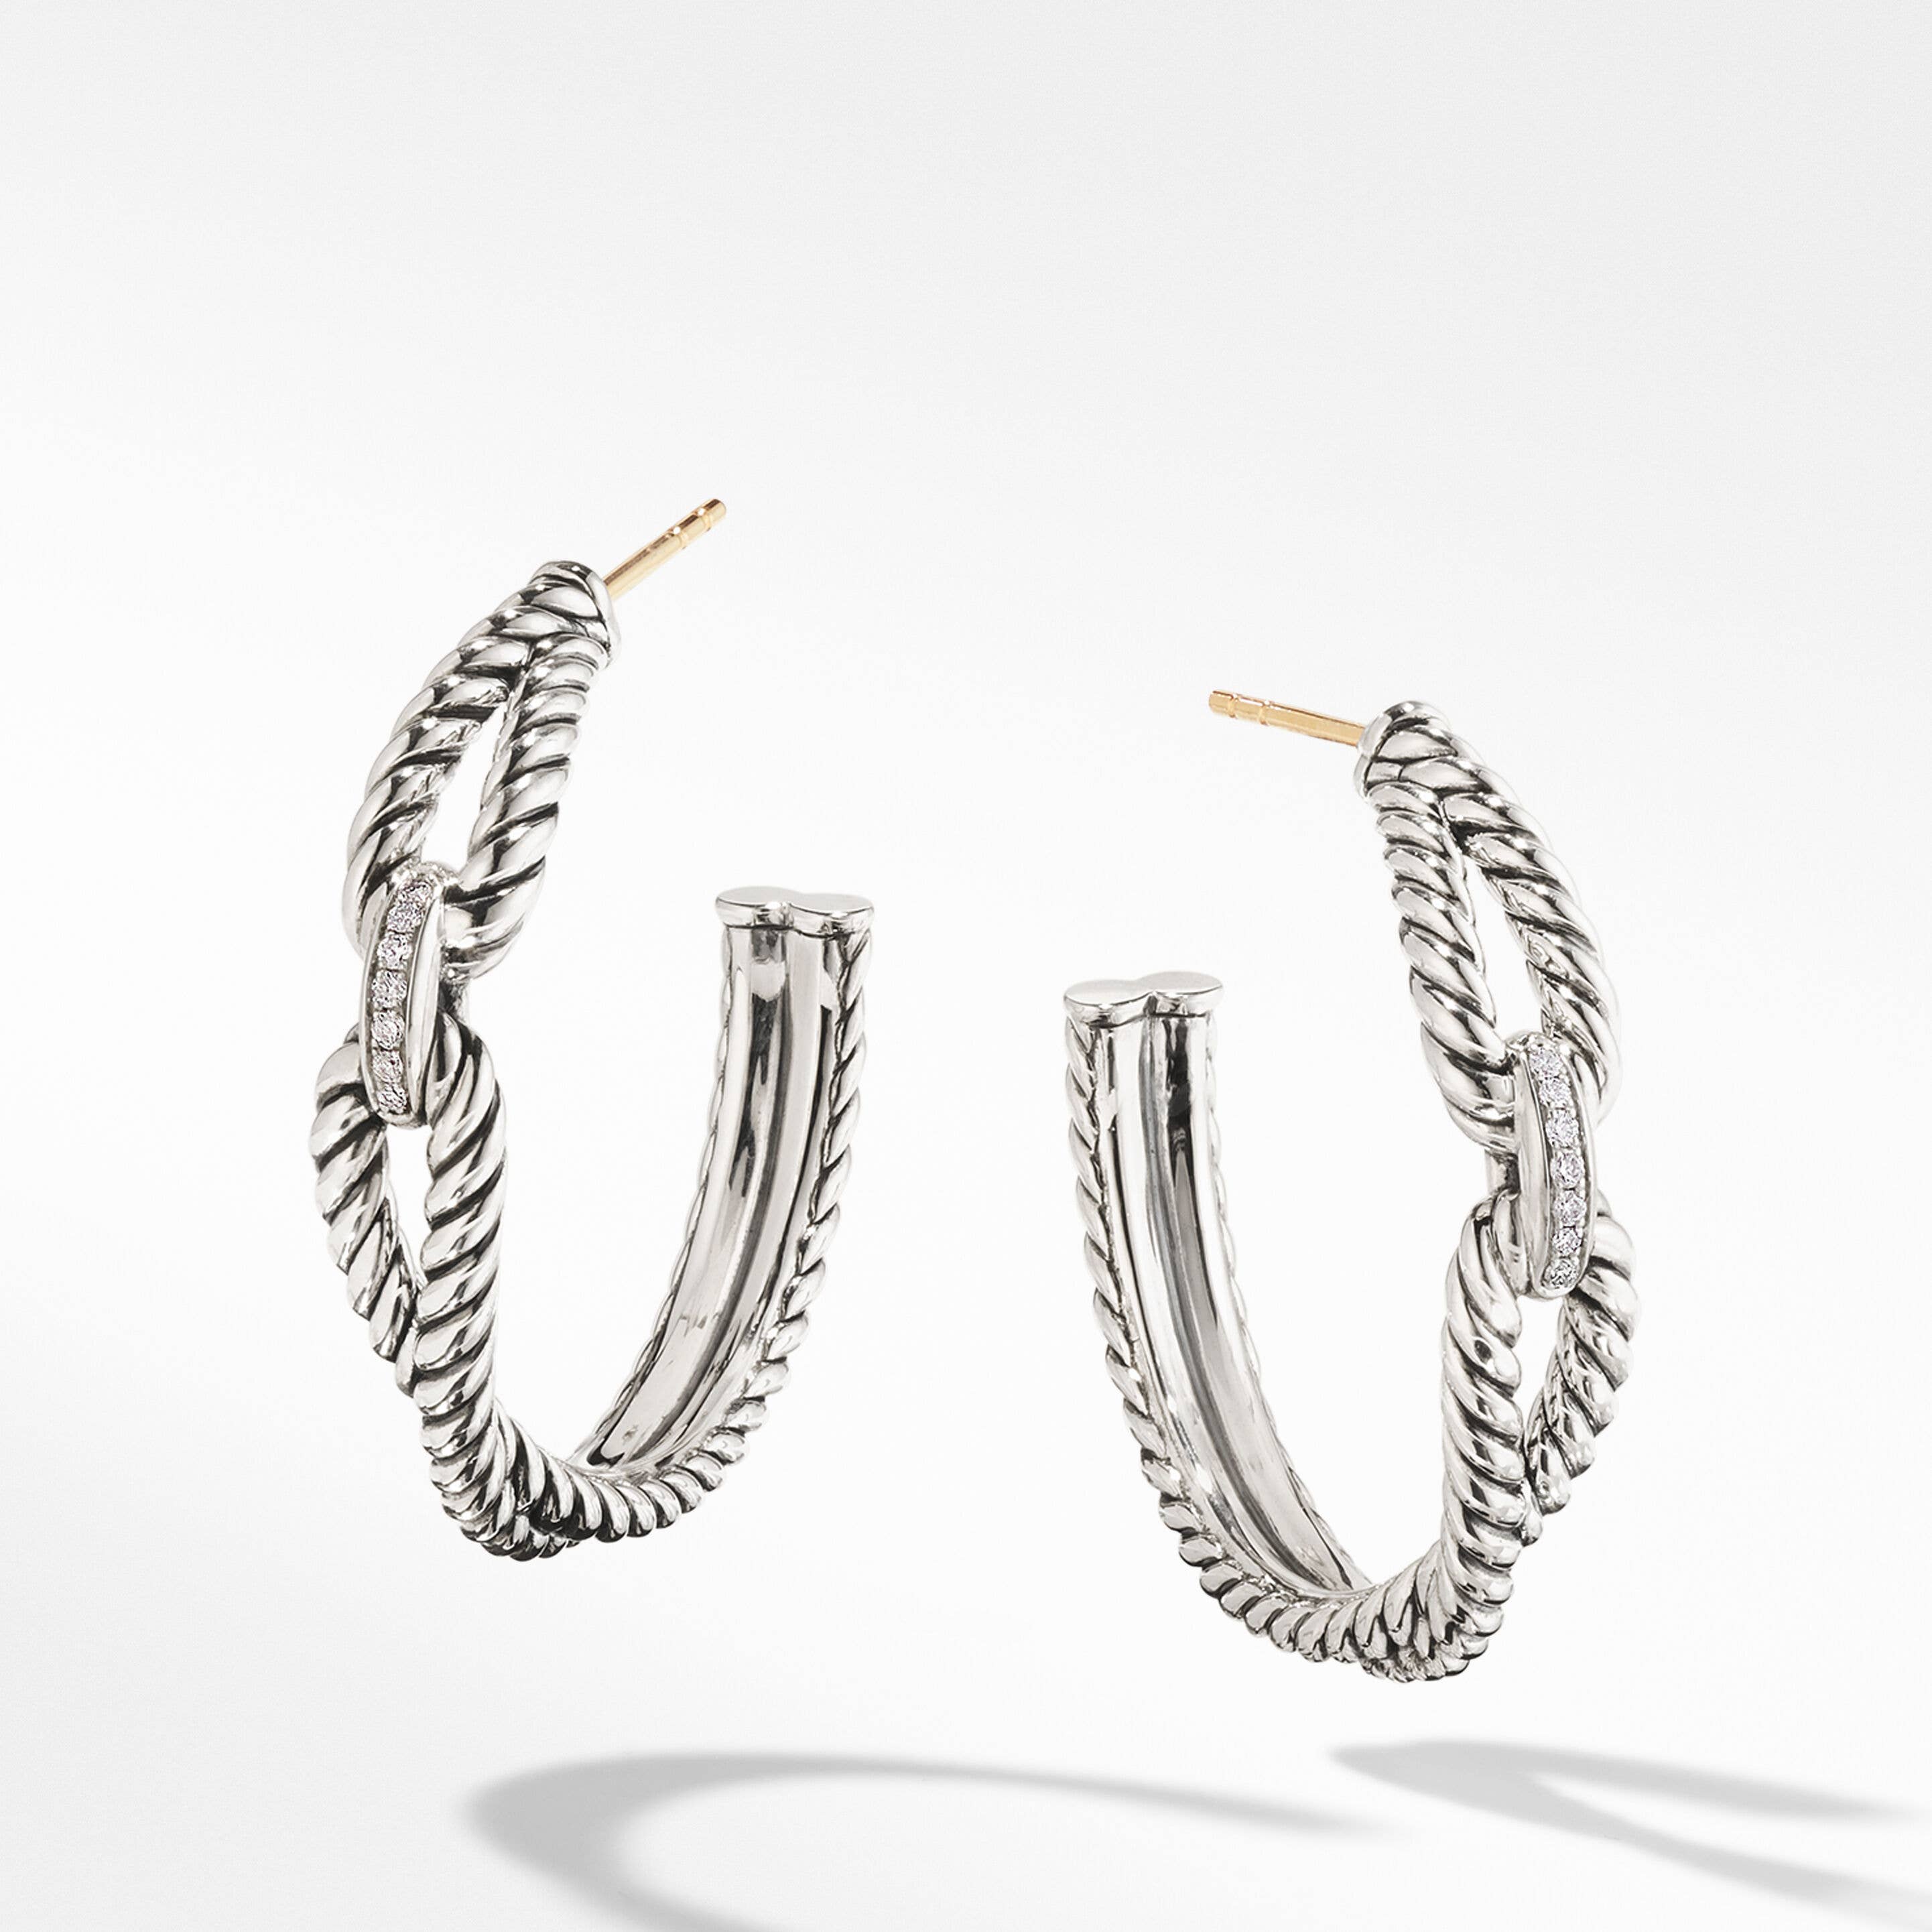 Cable Loop Hoop Earrings in Sterling Silver with Pavé Diamonds